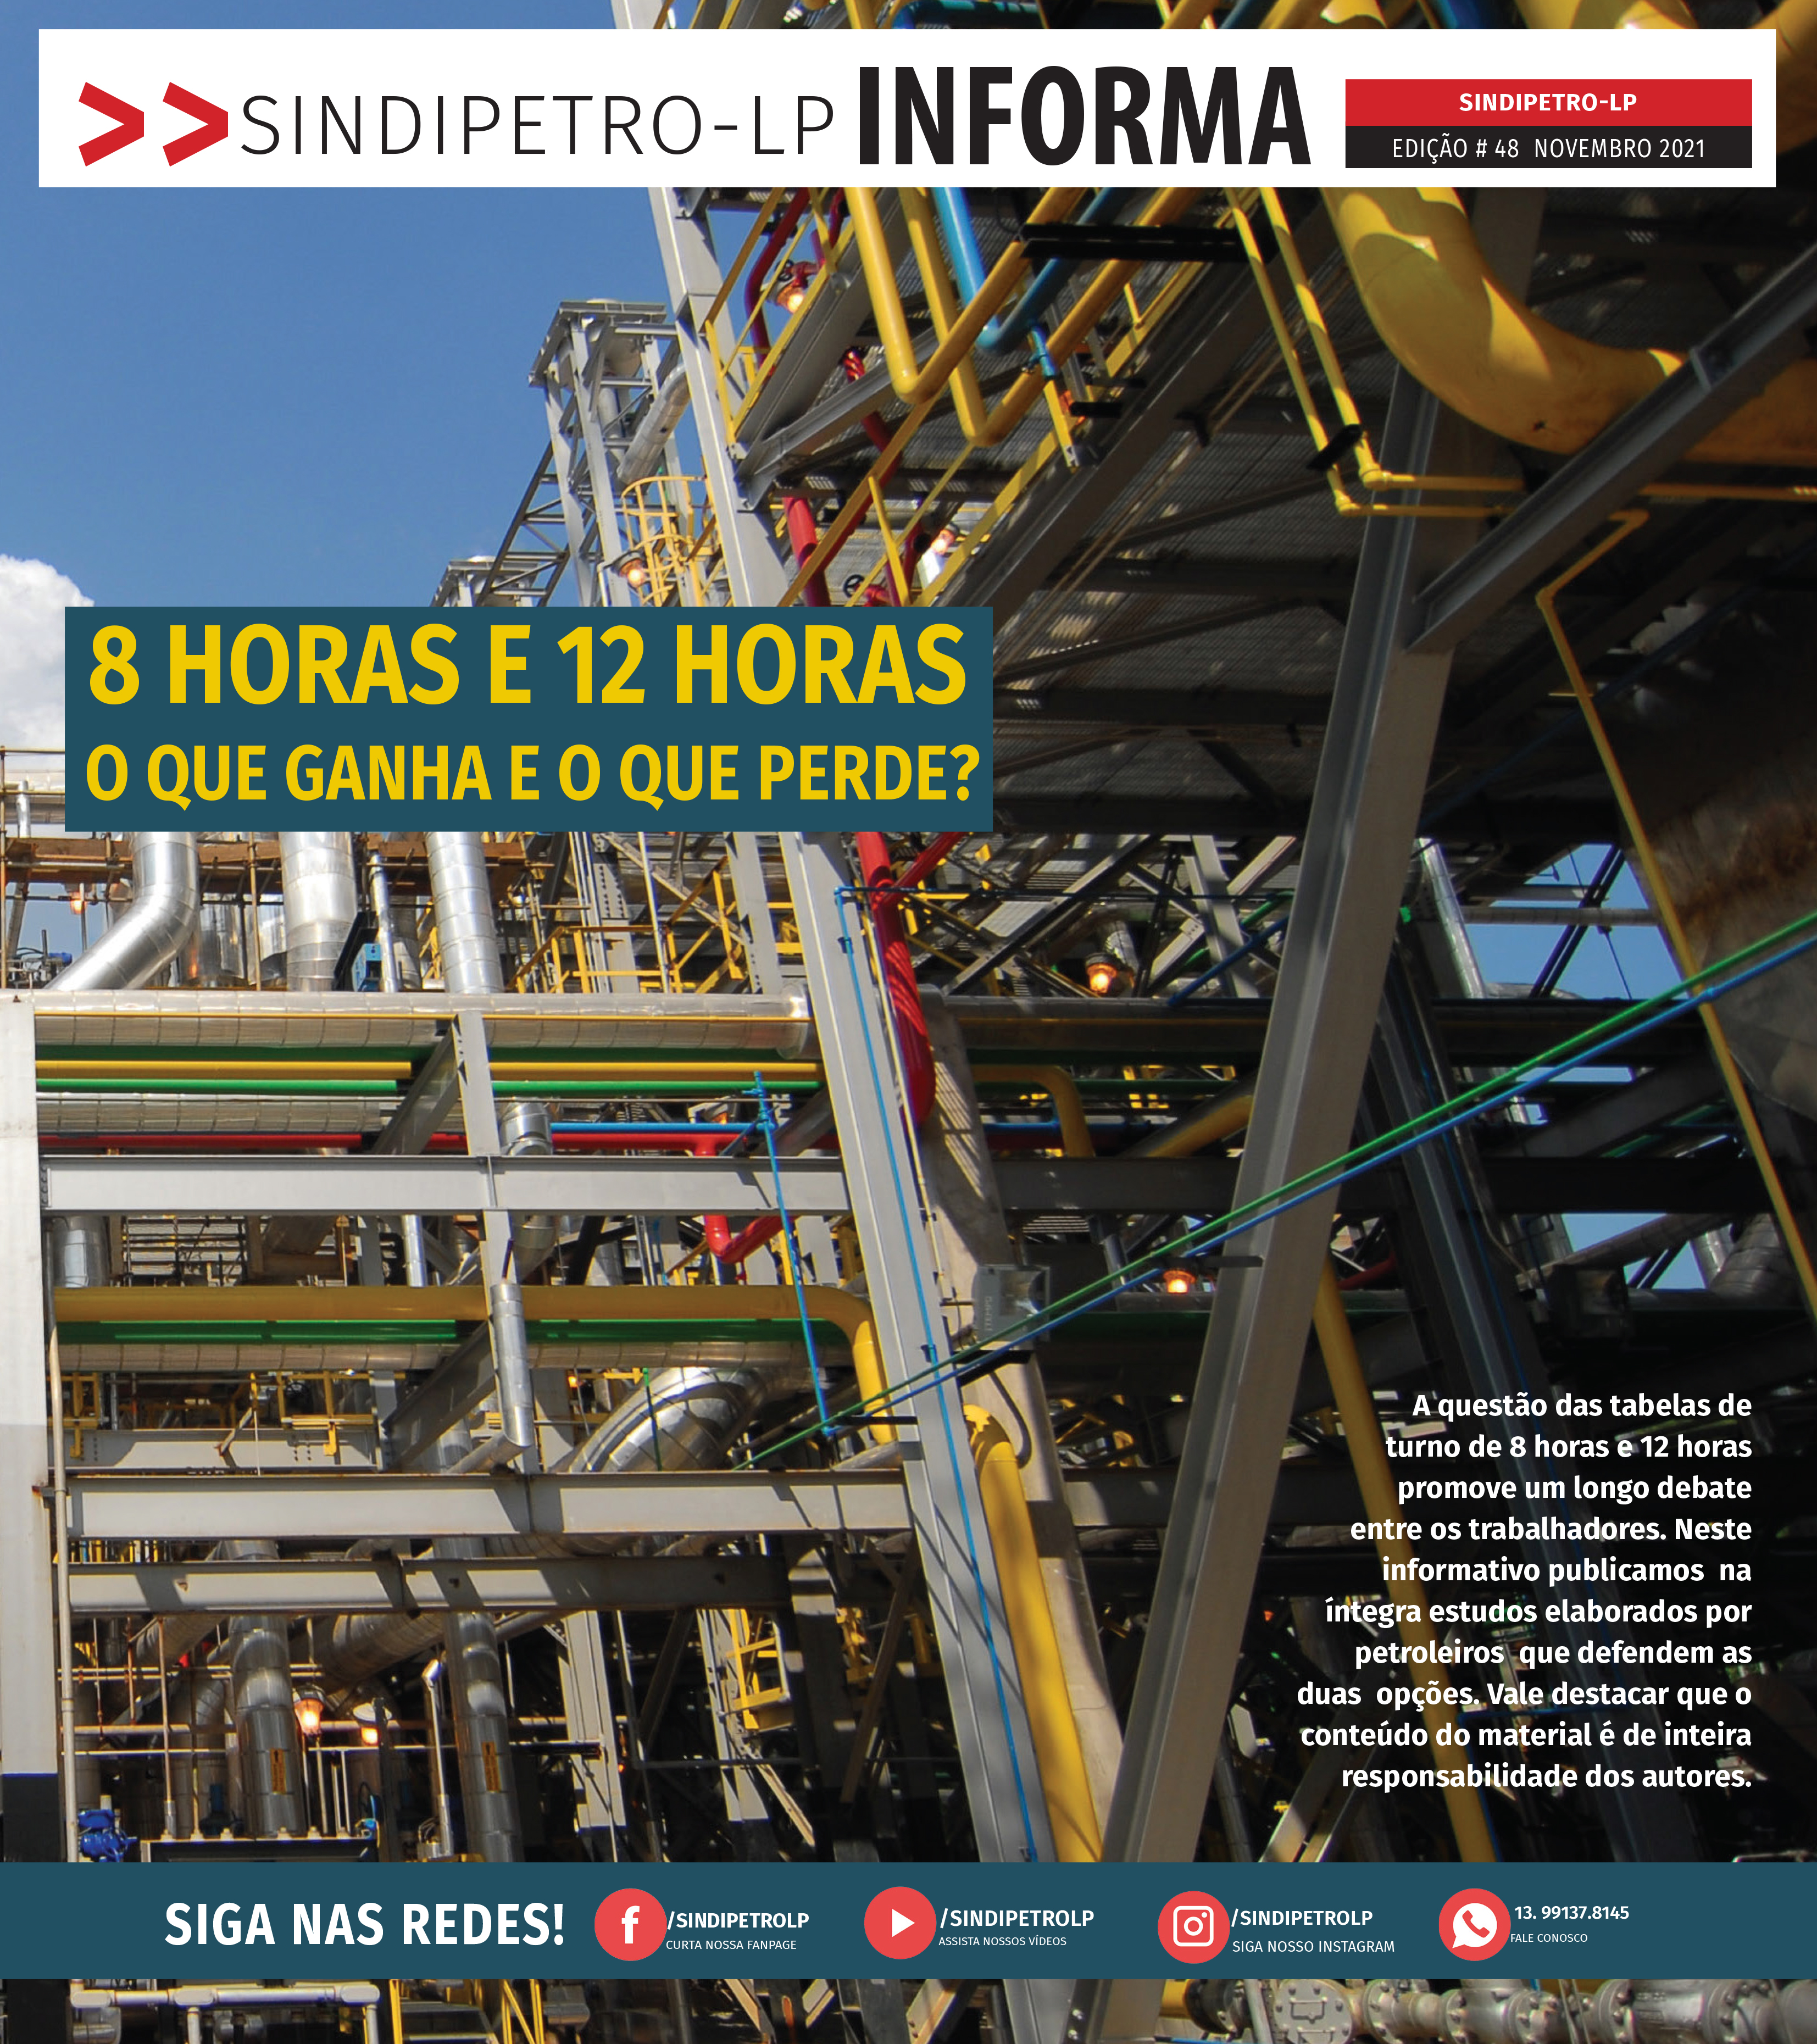 Você já leu a versão digital do jornal Sindipetro-LP Informa nº 48 - Especial Tabelas de turno?